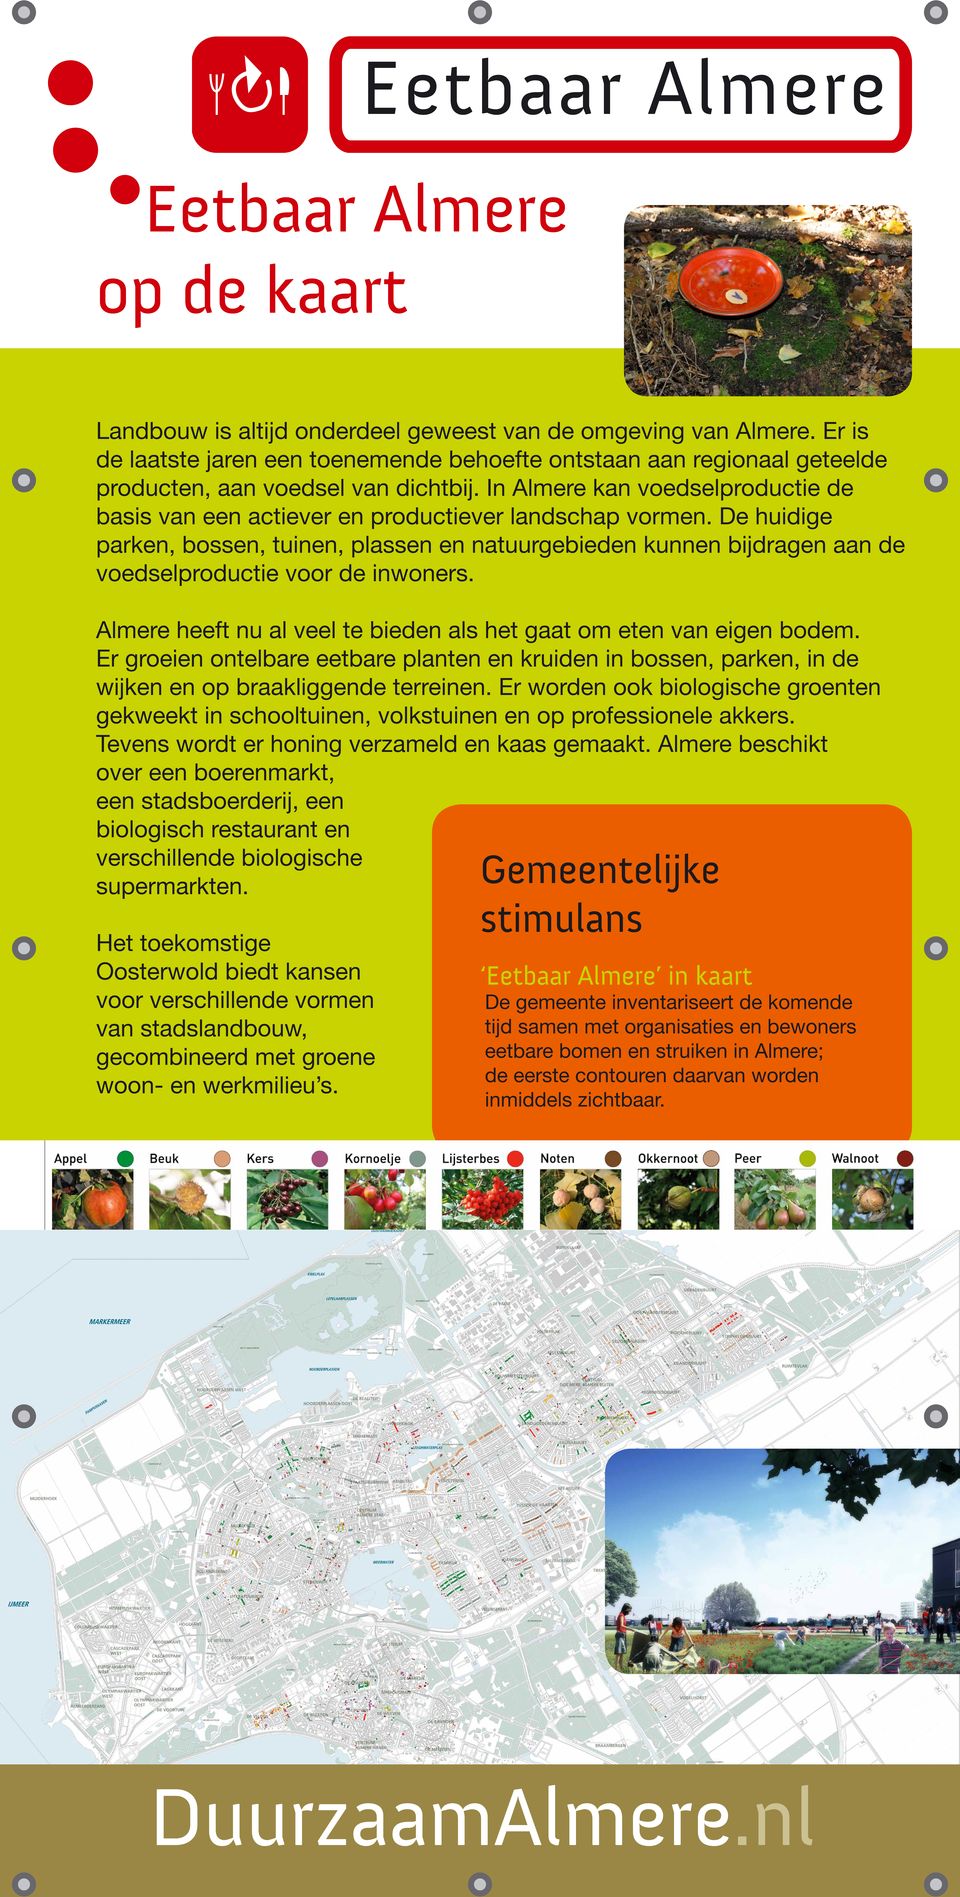 De huidige parken, bossen, tuinen, plassen en natuurgebieden kunnen bijdragen aan de voedselproductie voor de inwoners. Almere heeft nu al veel te bieden als het gaat om eten van eigen bodem.